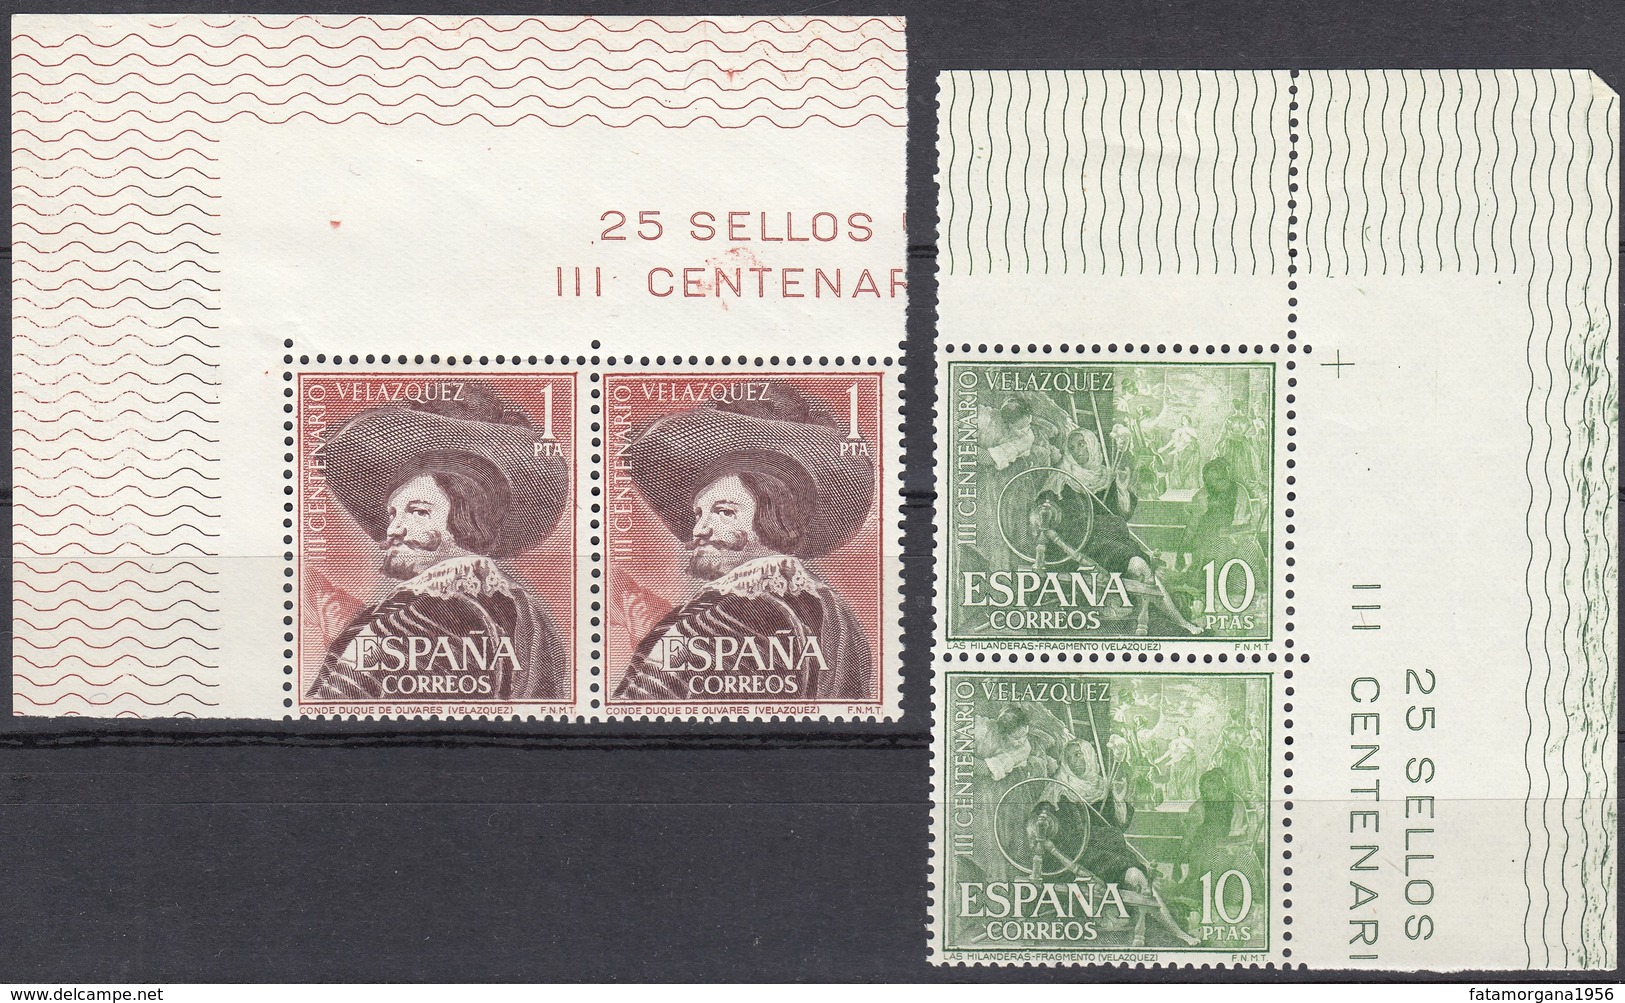 SPAGNA - SPAIN - ESPAGNE - 1961 - Serie Completa In Coppie Per Complessivi 8 Valori Nuovi MNH: Yvert 1017/1020. - Nuovi